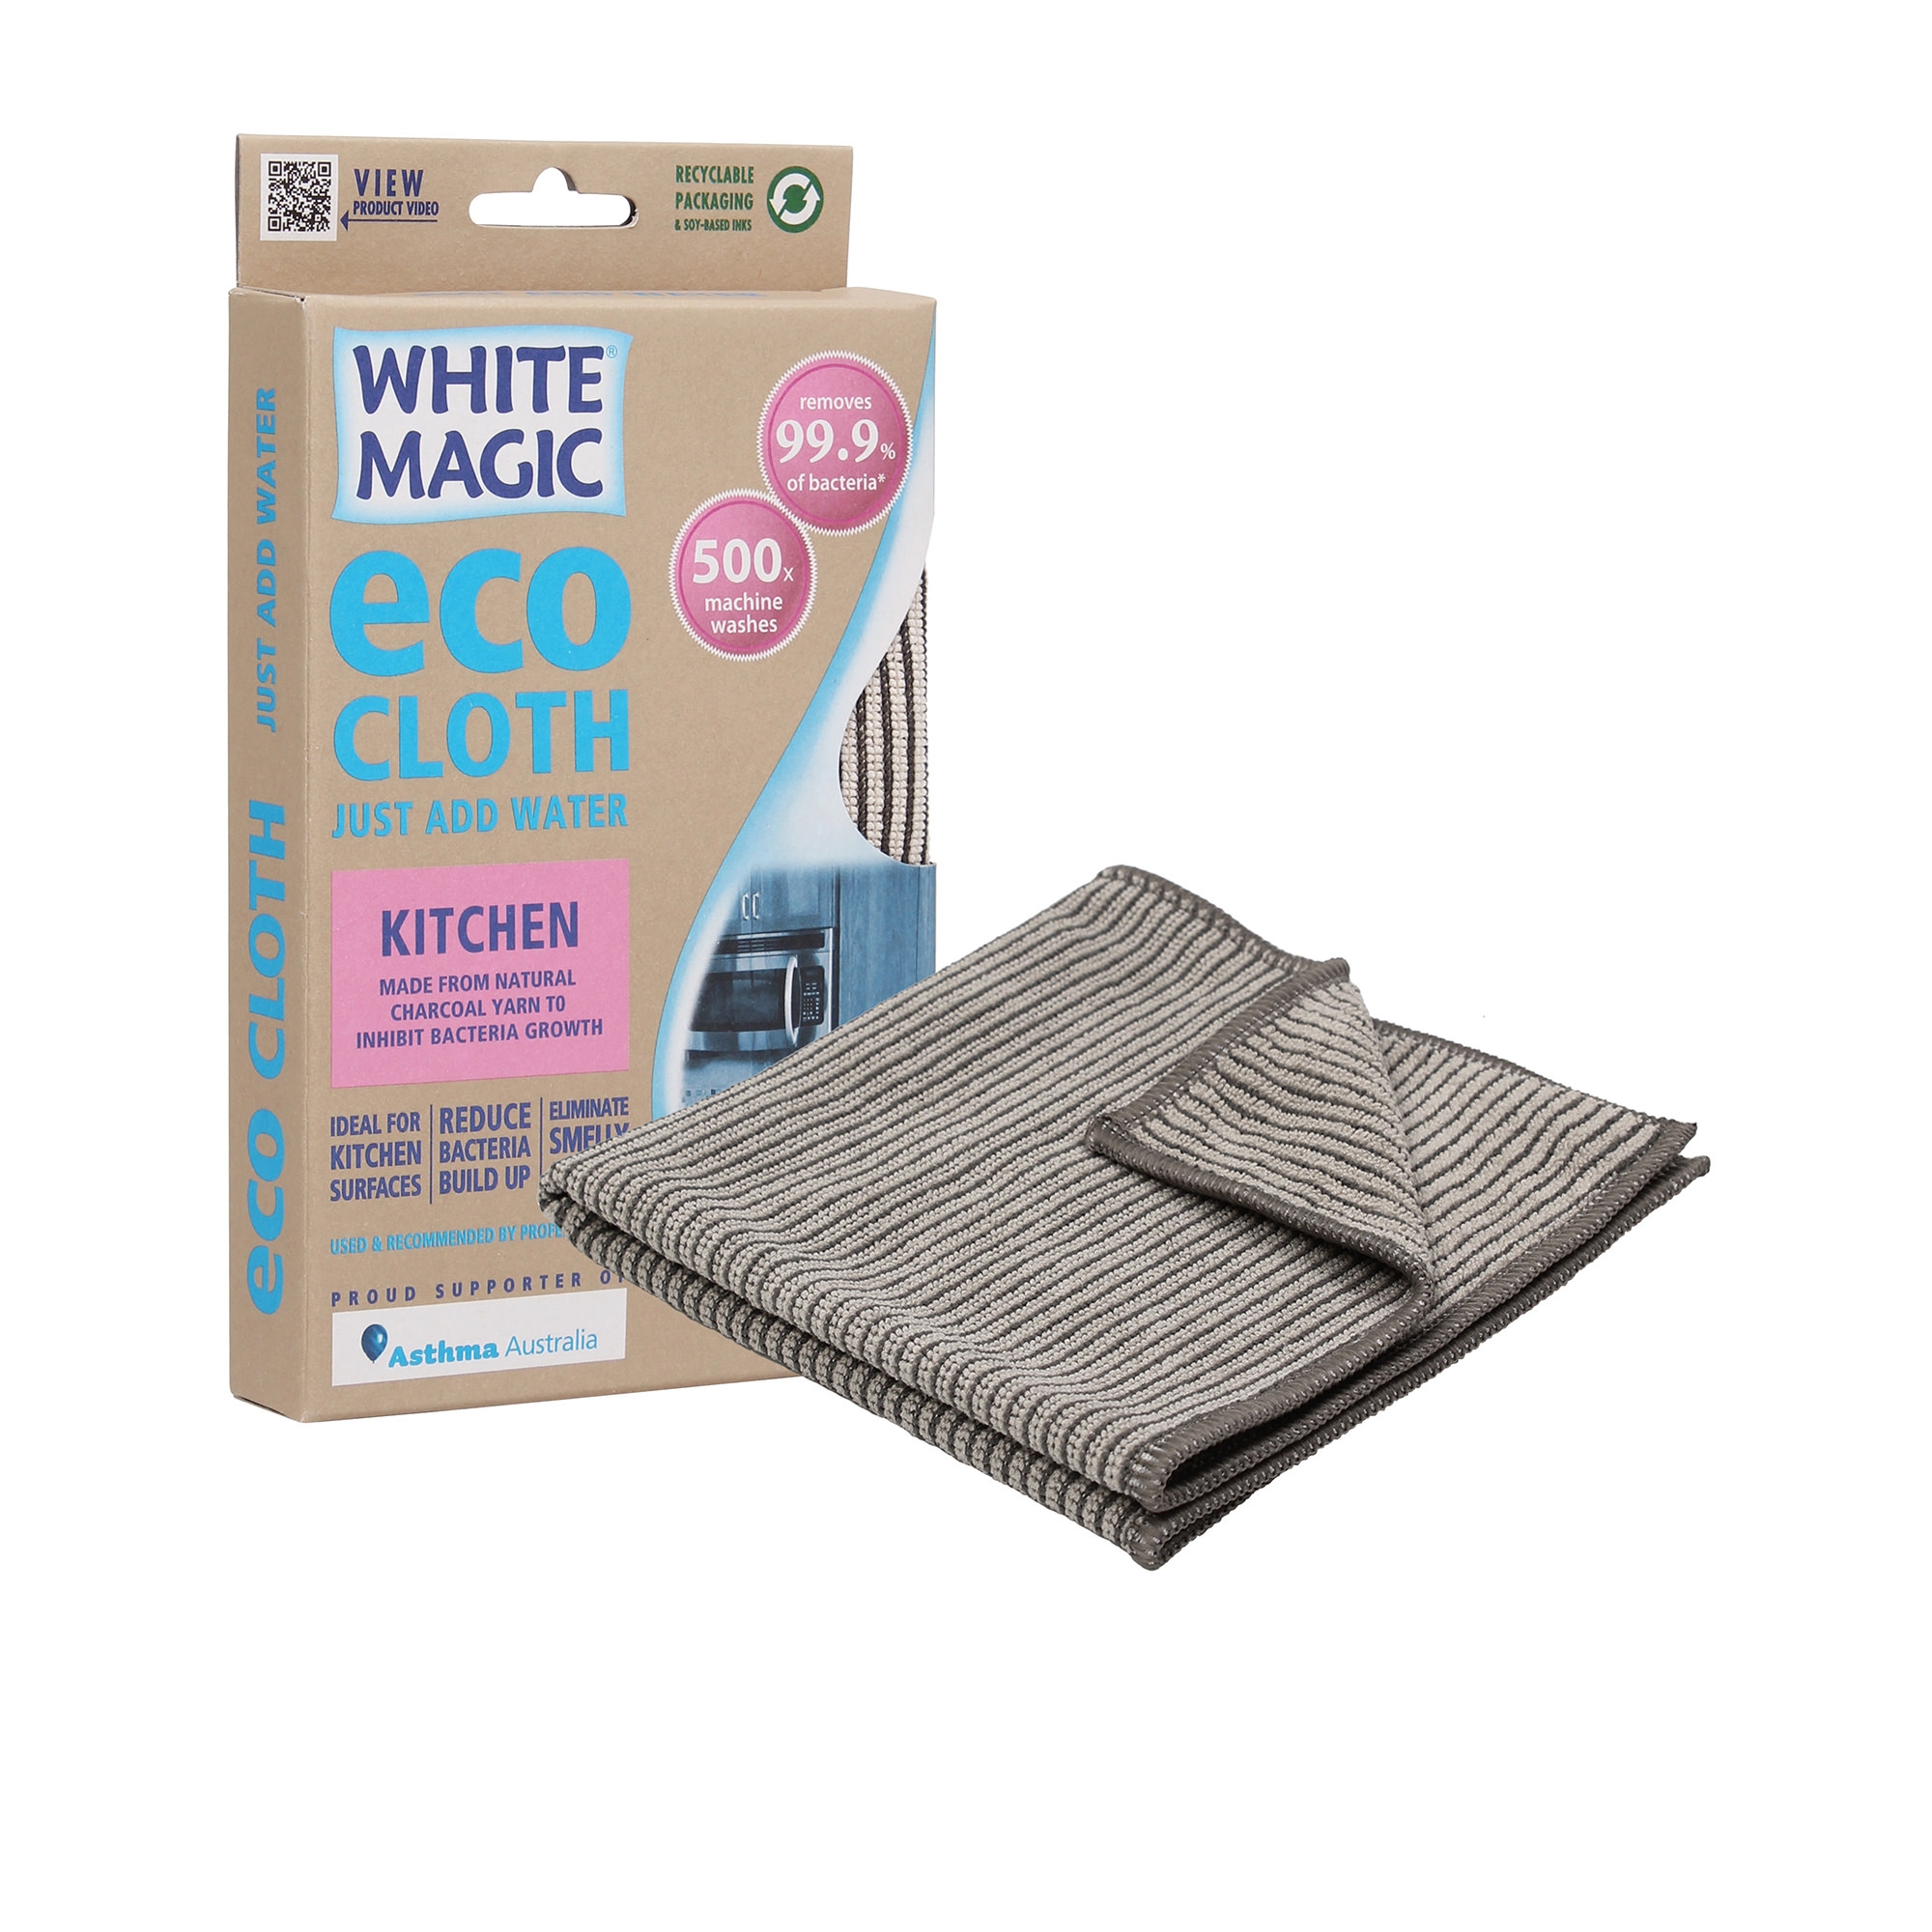 White Magic Eco Cloth Kitchen Image 1